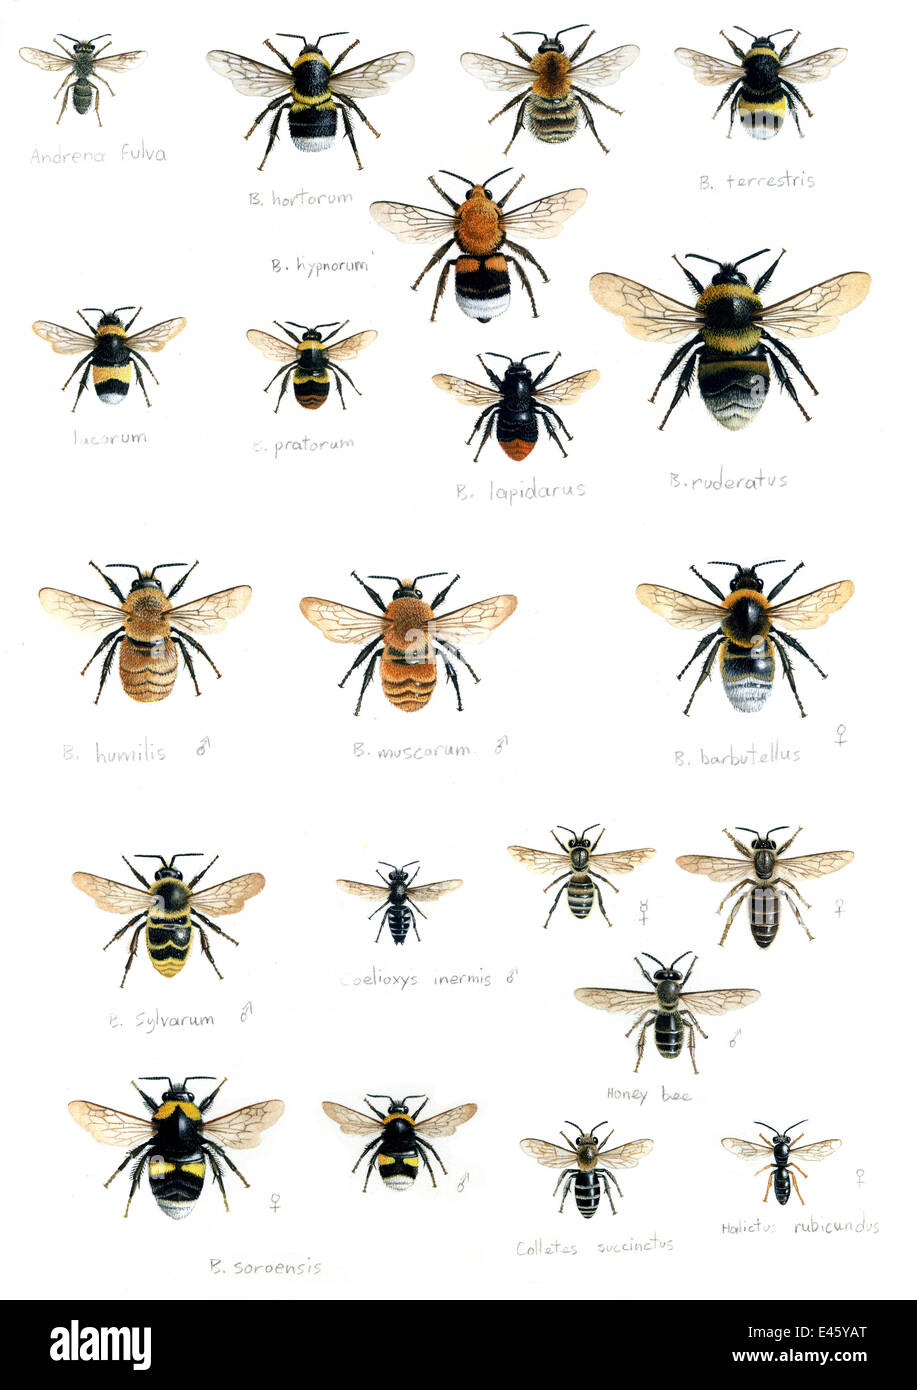 Ilustración de British los abejorros (Bombus sp): (en filas) hypnorum Adrena fulva, Bombus terrestris, B. B., B. lacornum lapidarus pratorum, B., B. ruderatus, B. humilis, B., B. barbutellus muscorum, B. sylvarum, Coelioxys inermis, Apis mellifera, la púa Foto de stock